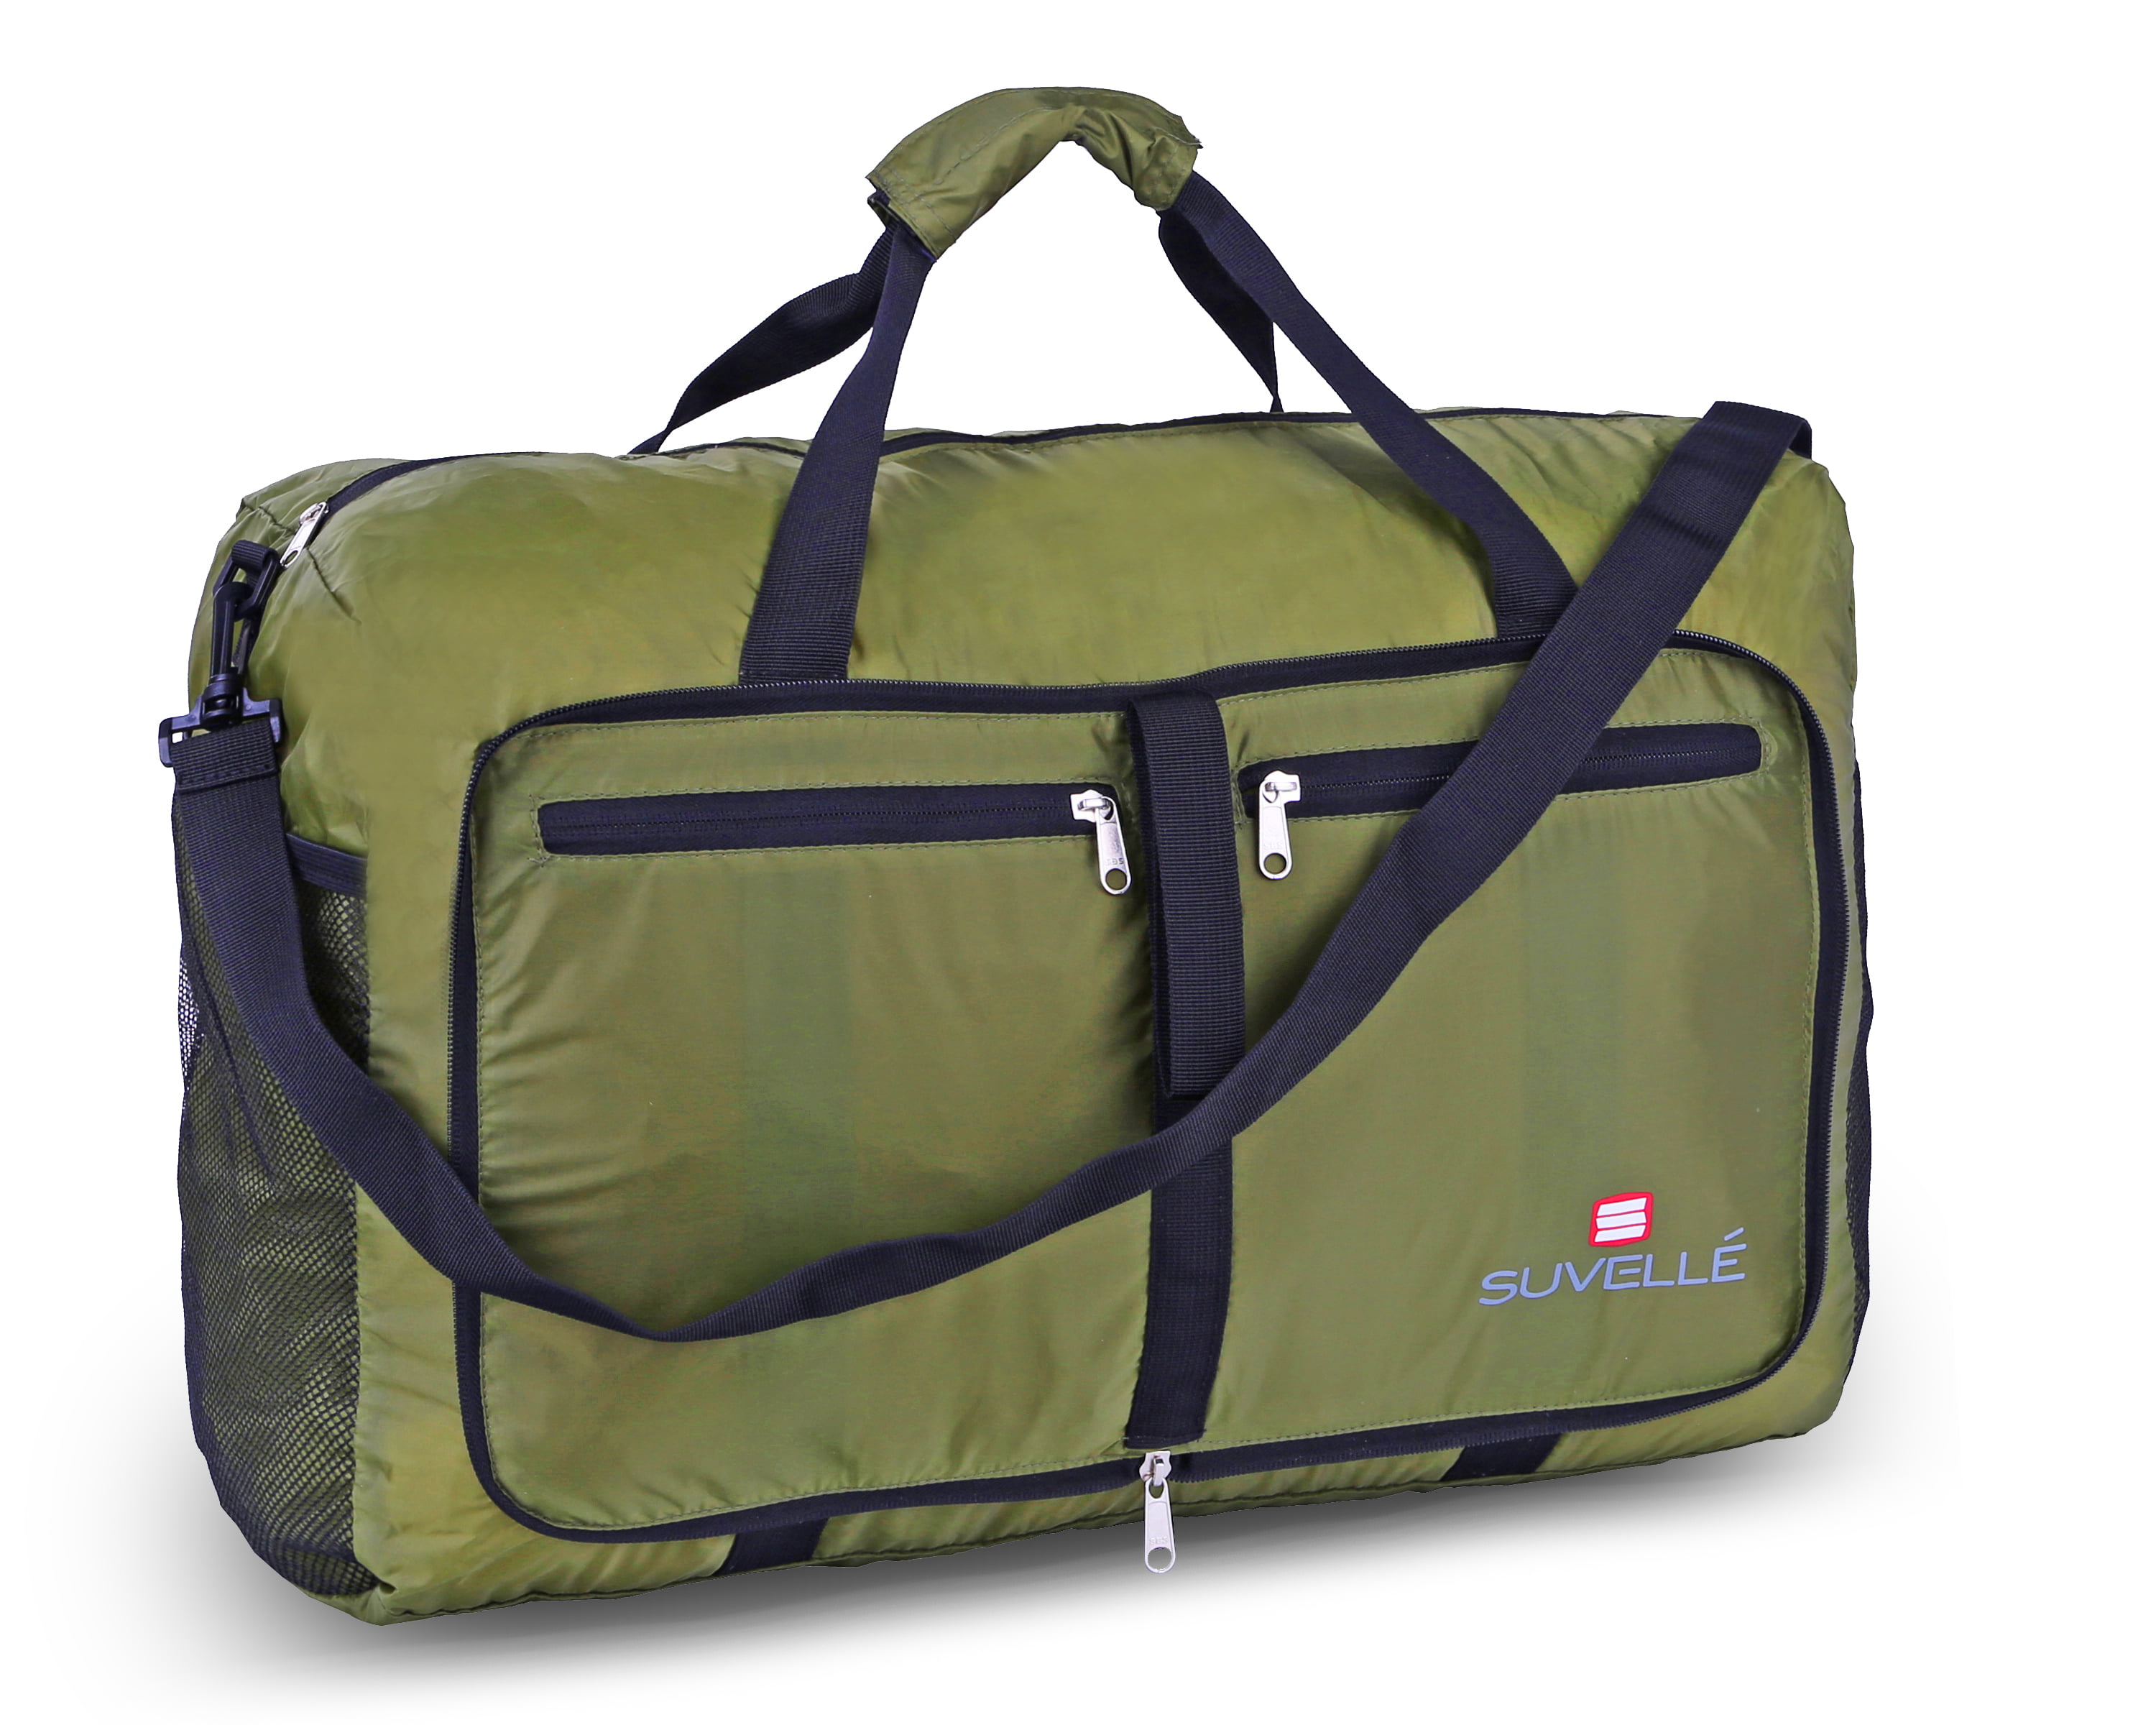 lightweight duffel bags for travel